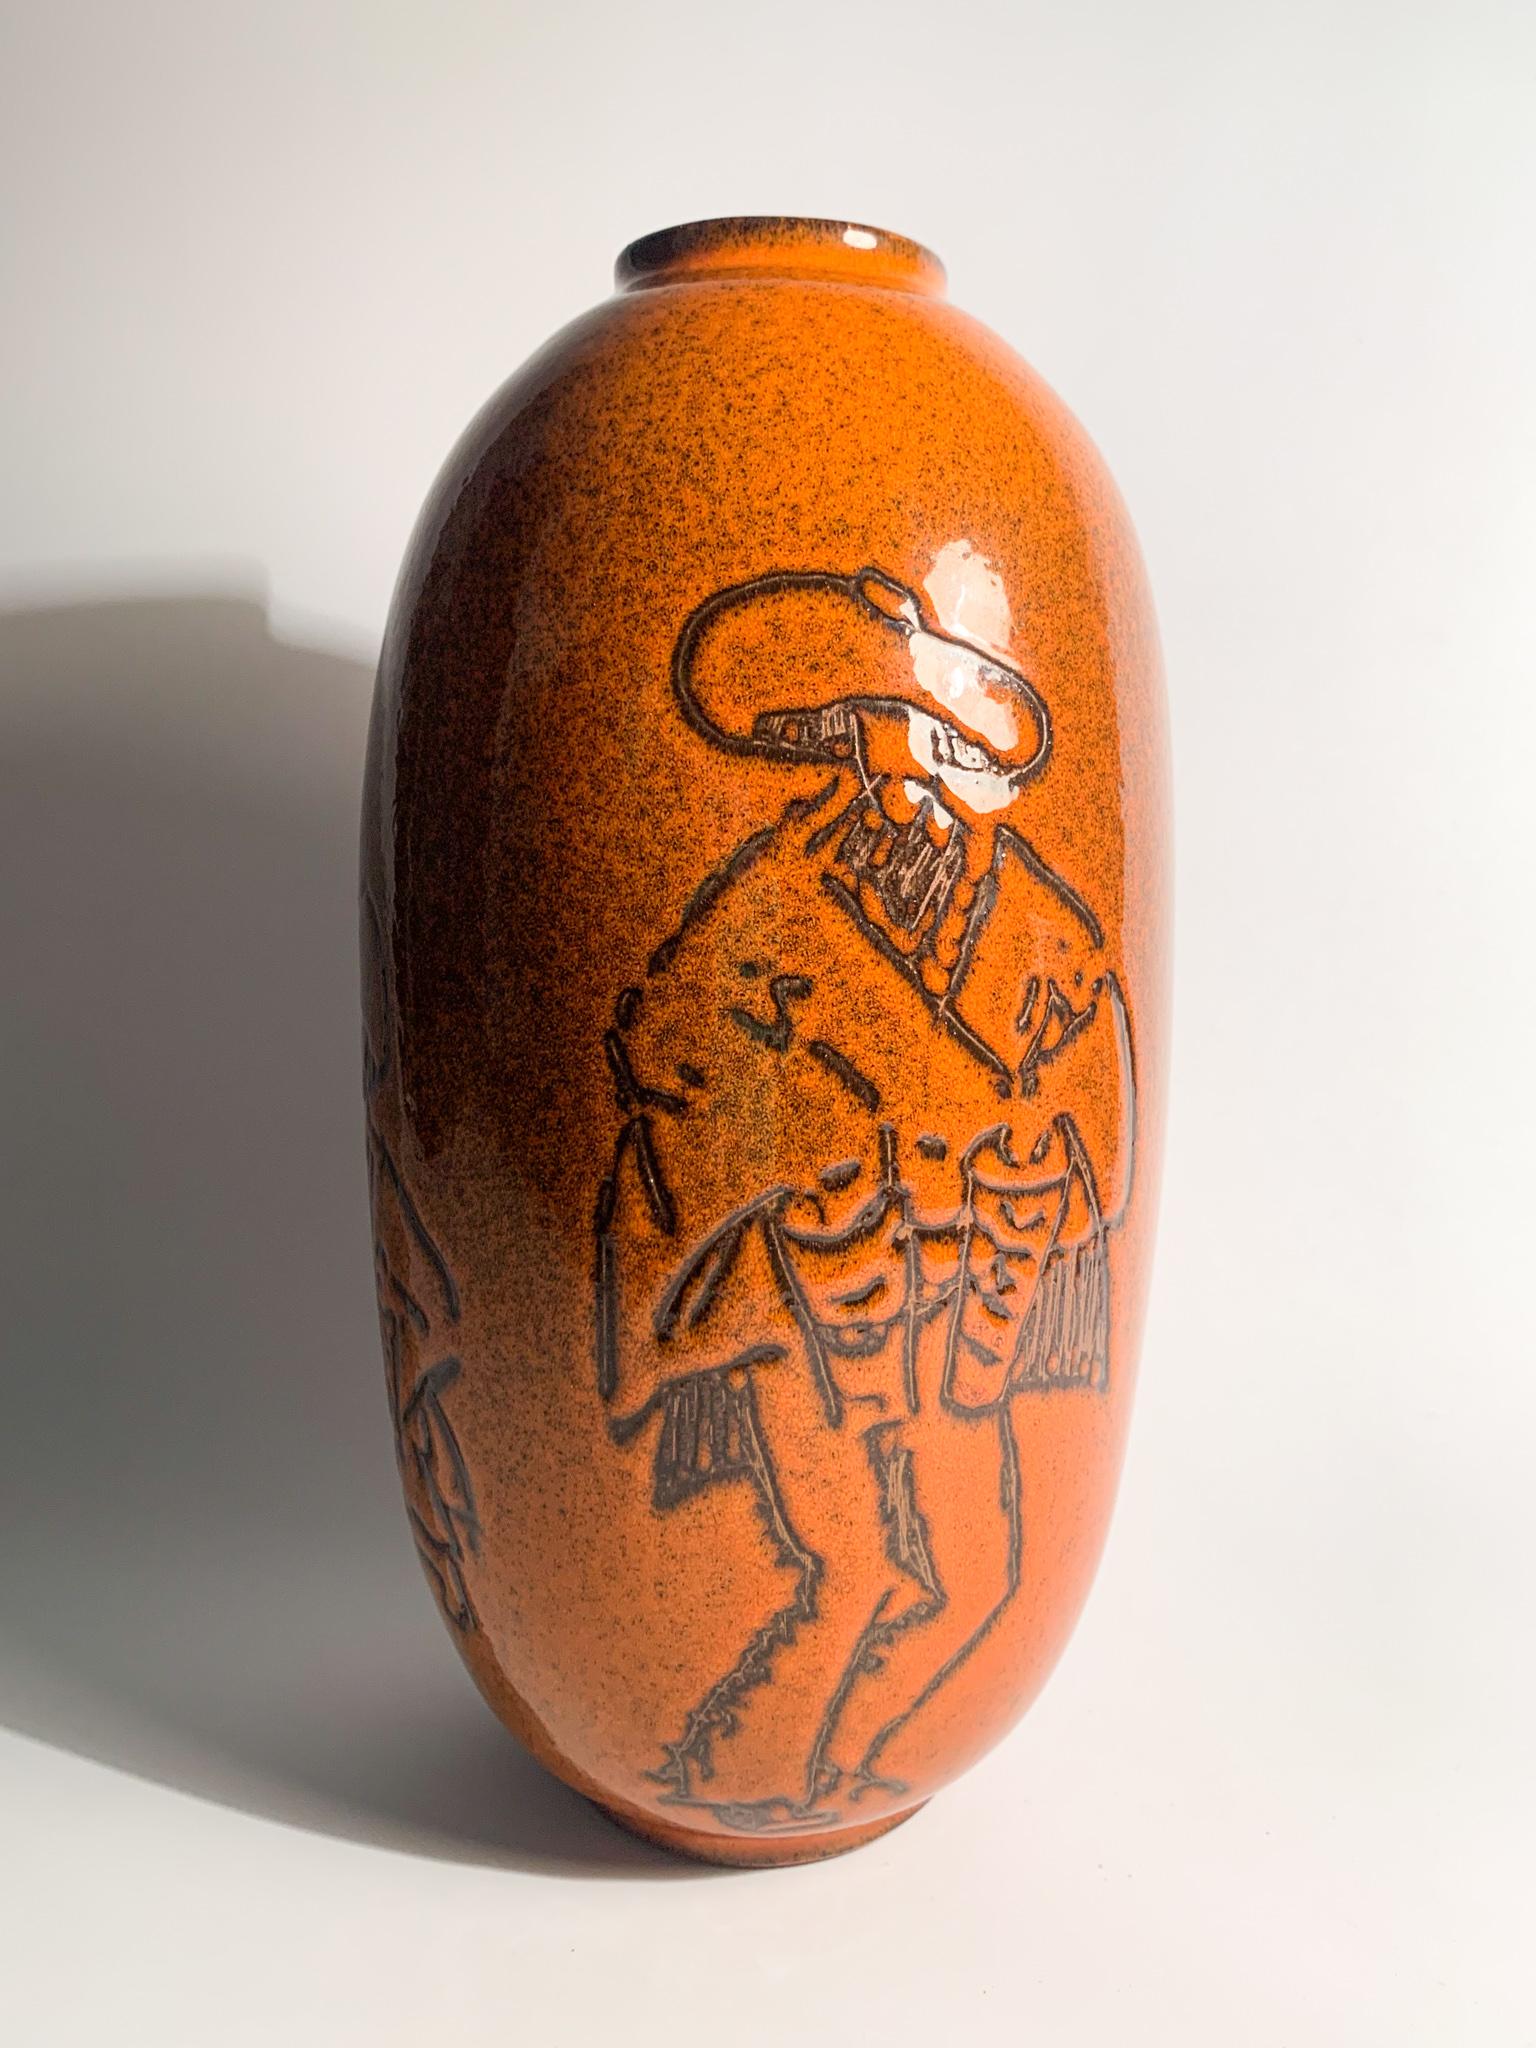 Orange Arcore ceramic vase, made in the 1950s.

Measures: Ø cm 13, h cm 23.